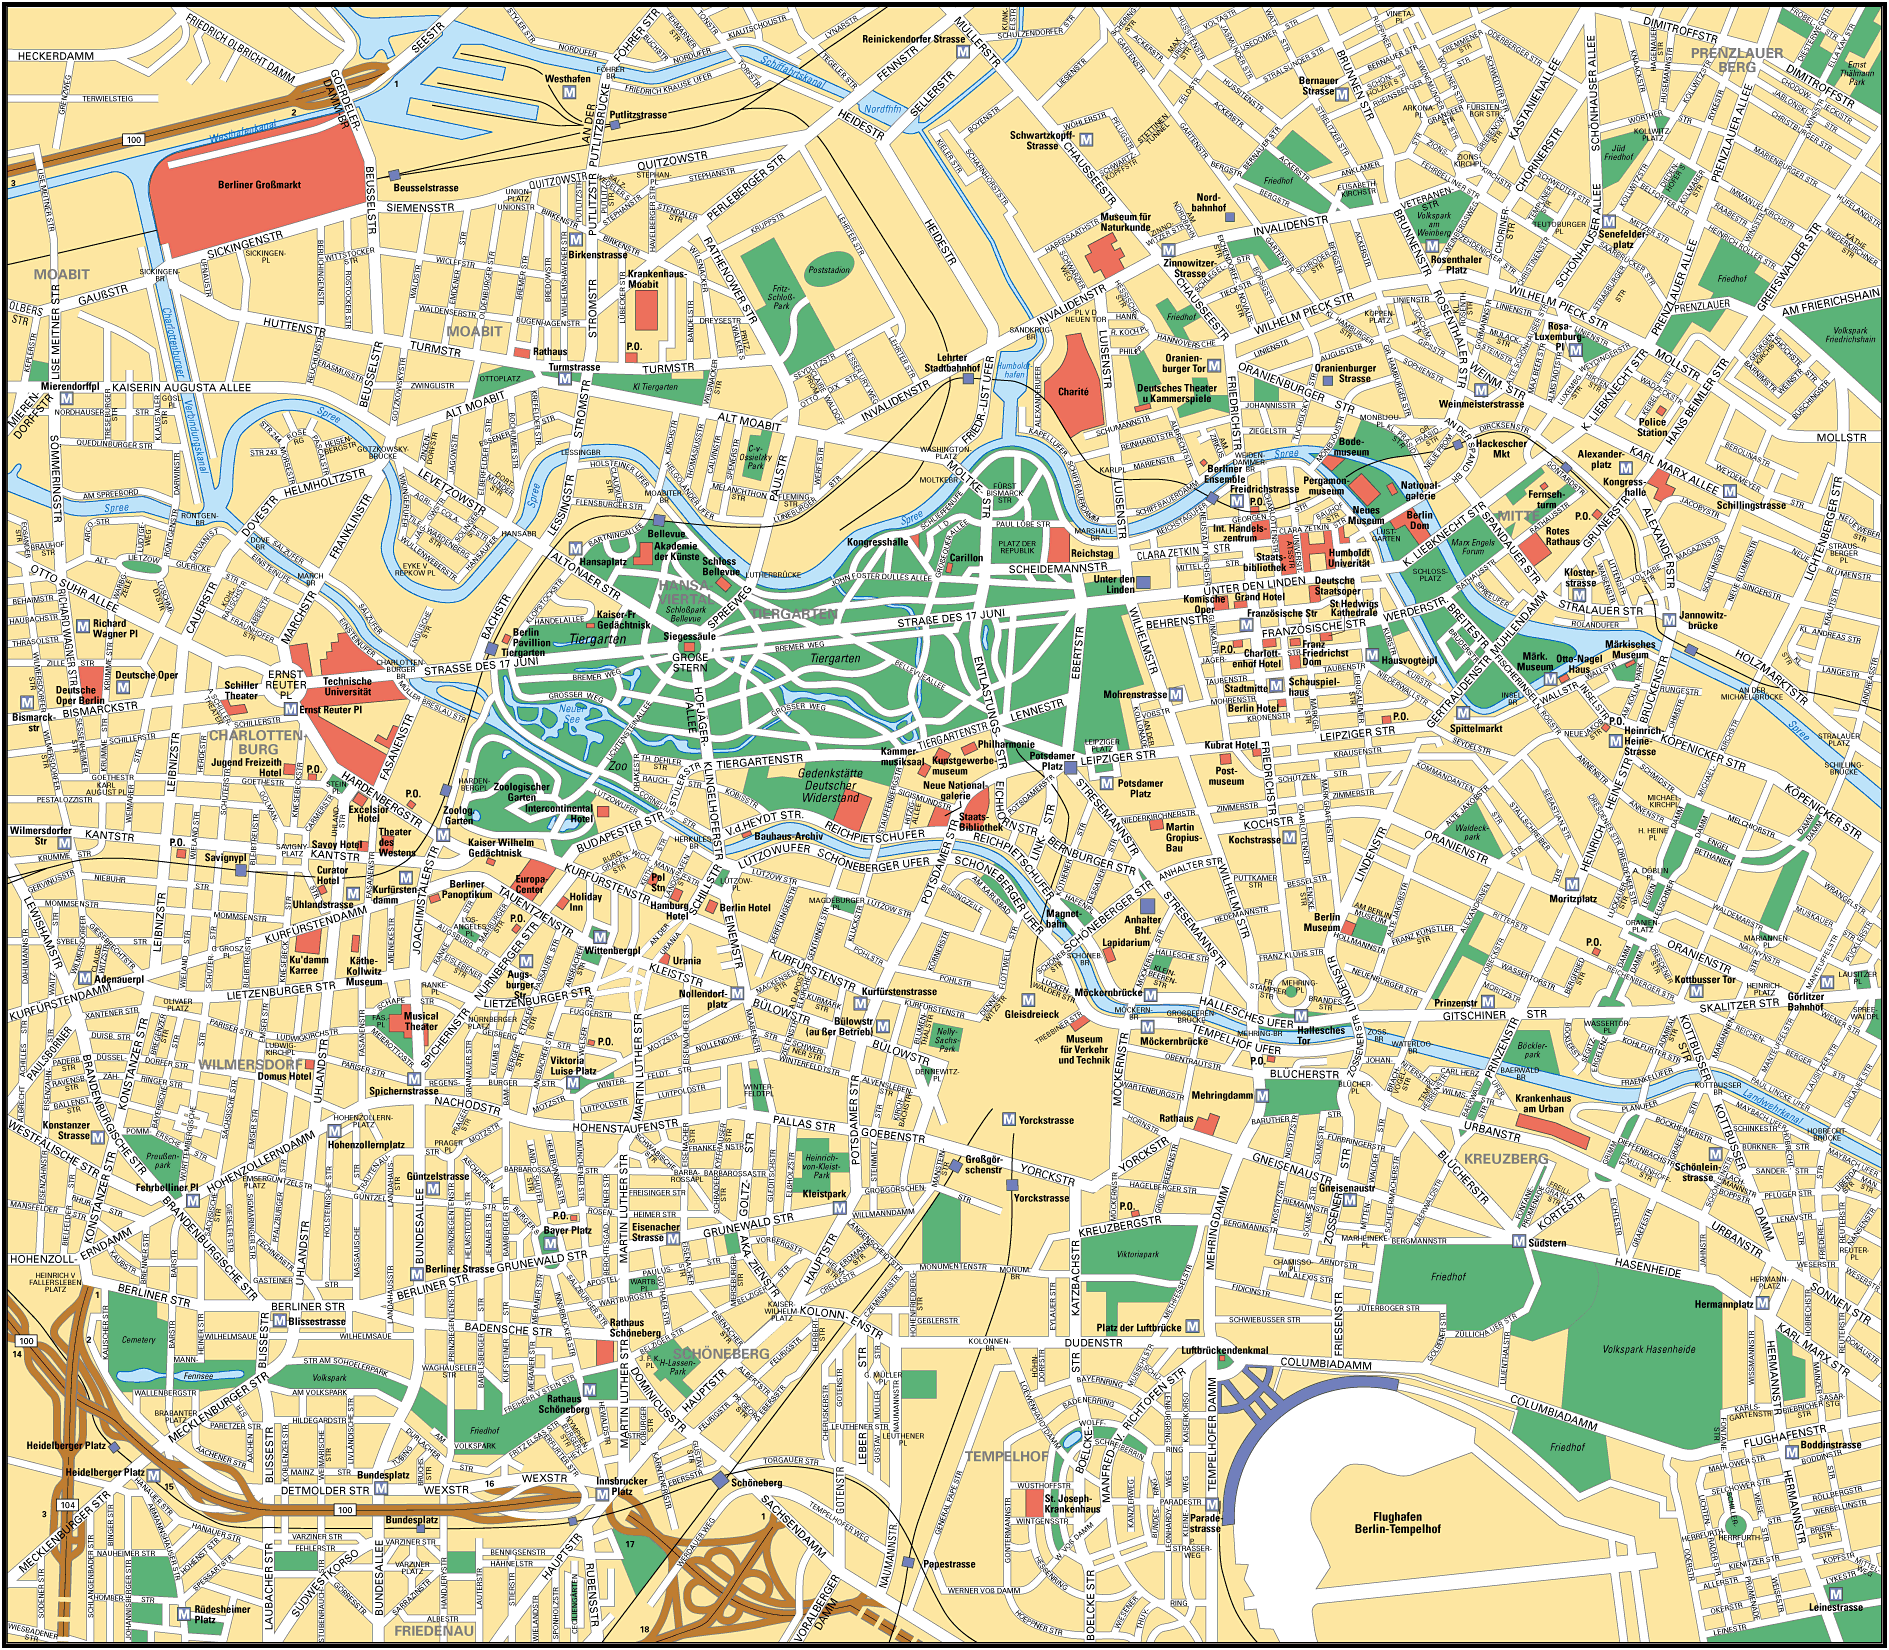 柏林地图